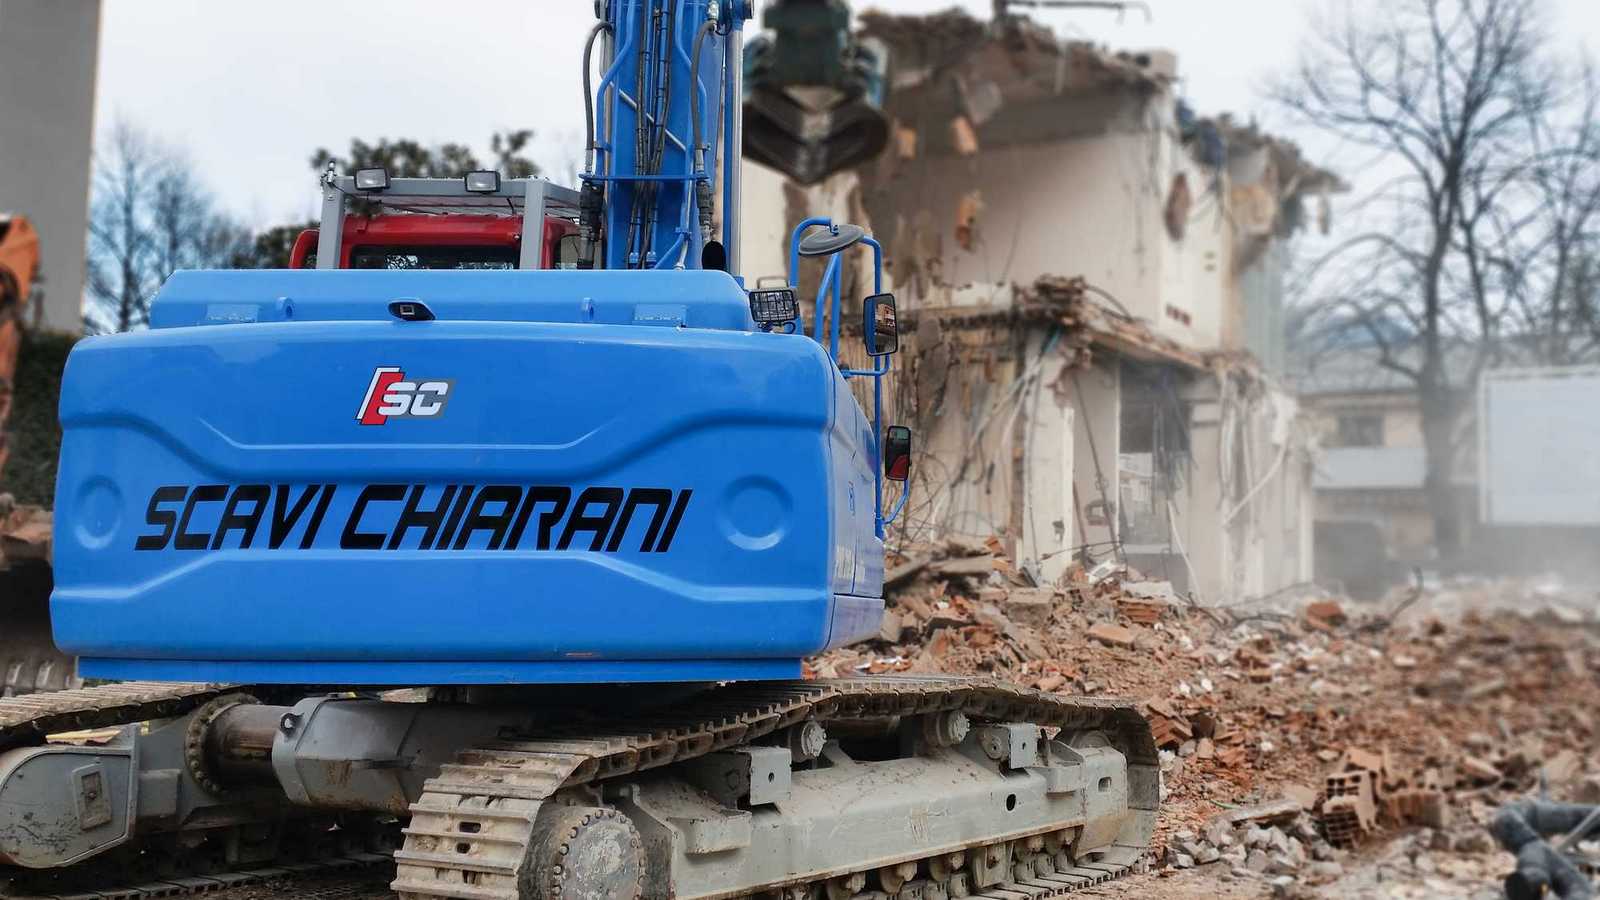 Scavi Chiarani demolizione Edifici